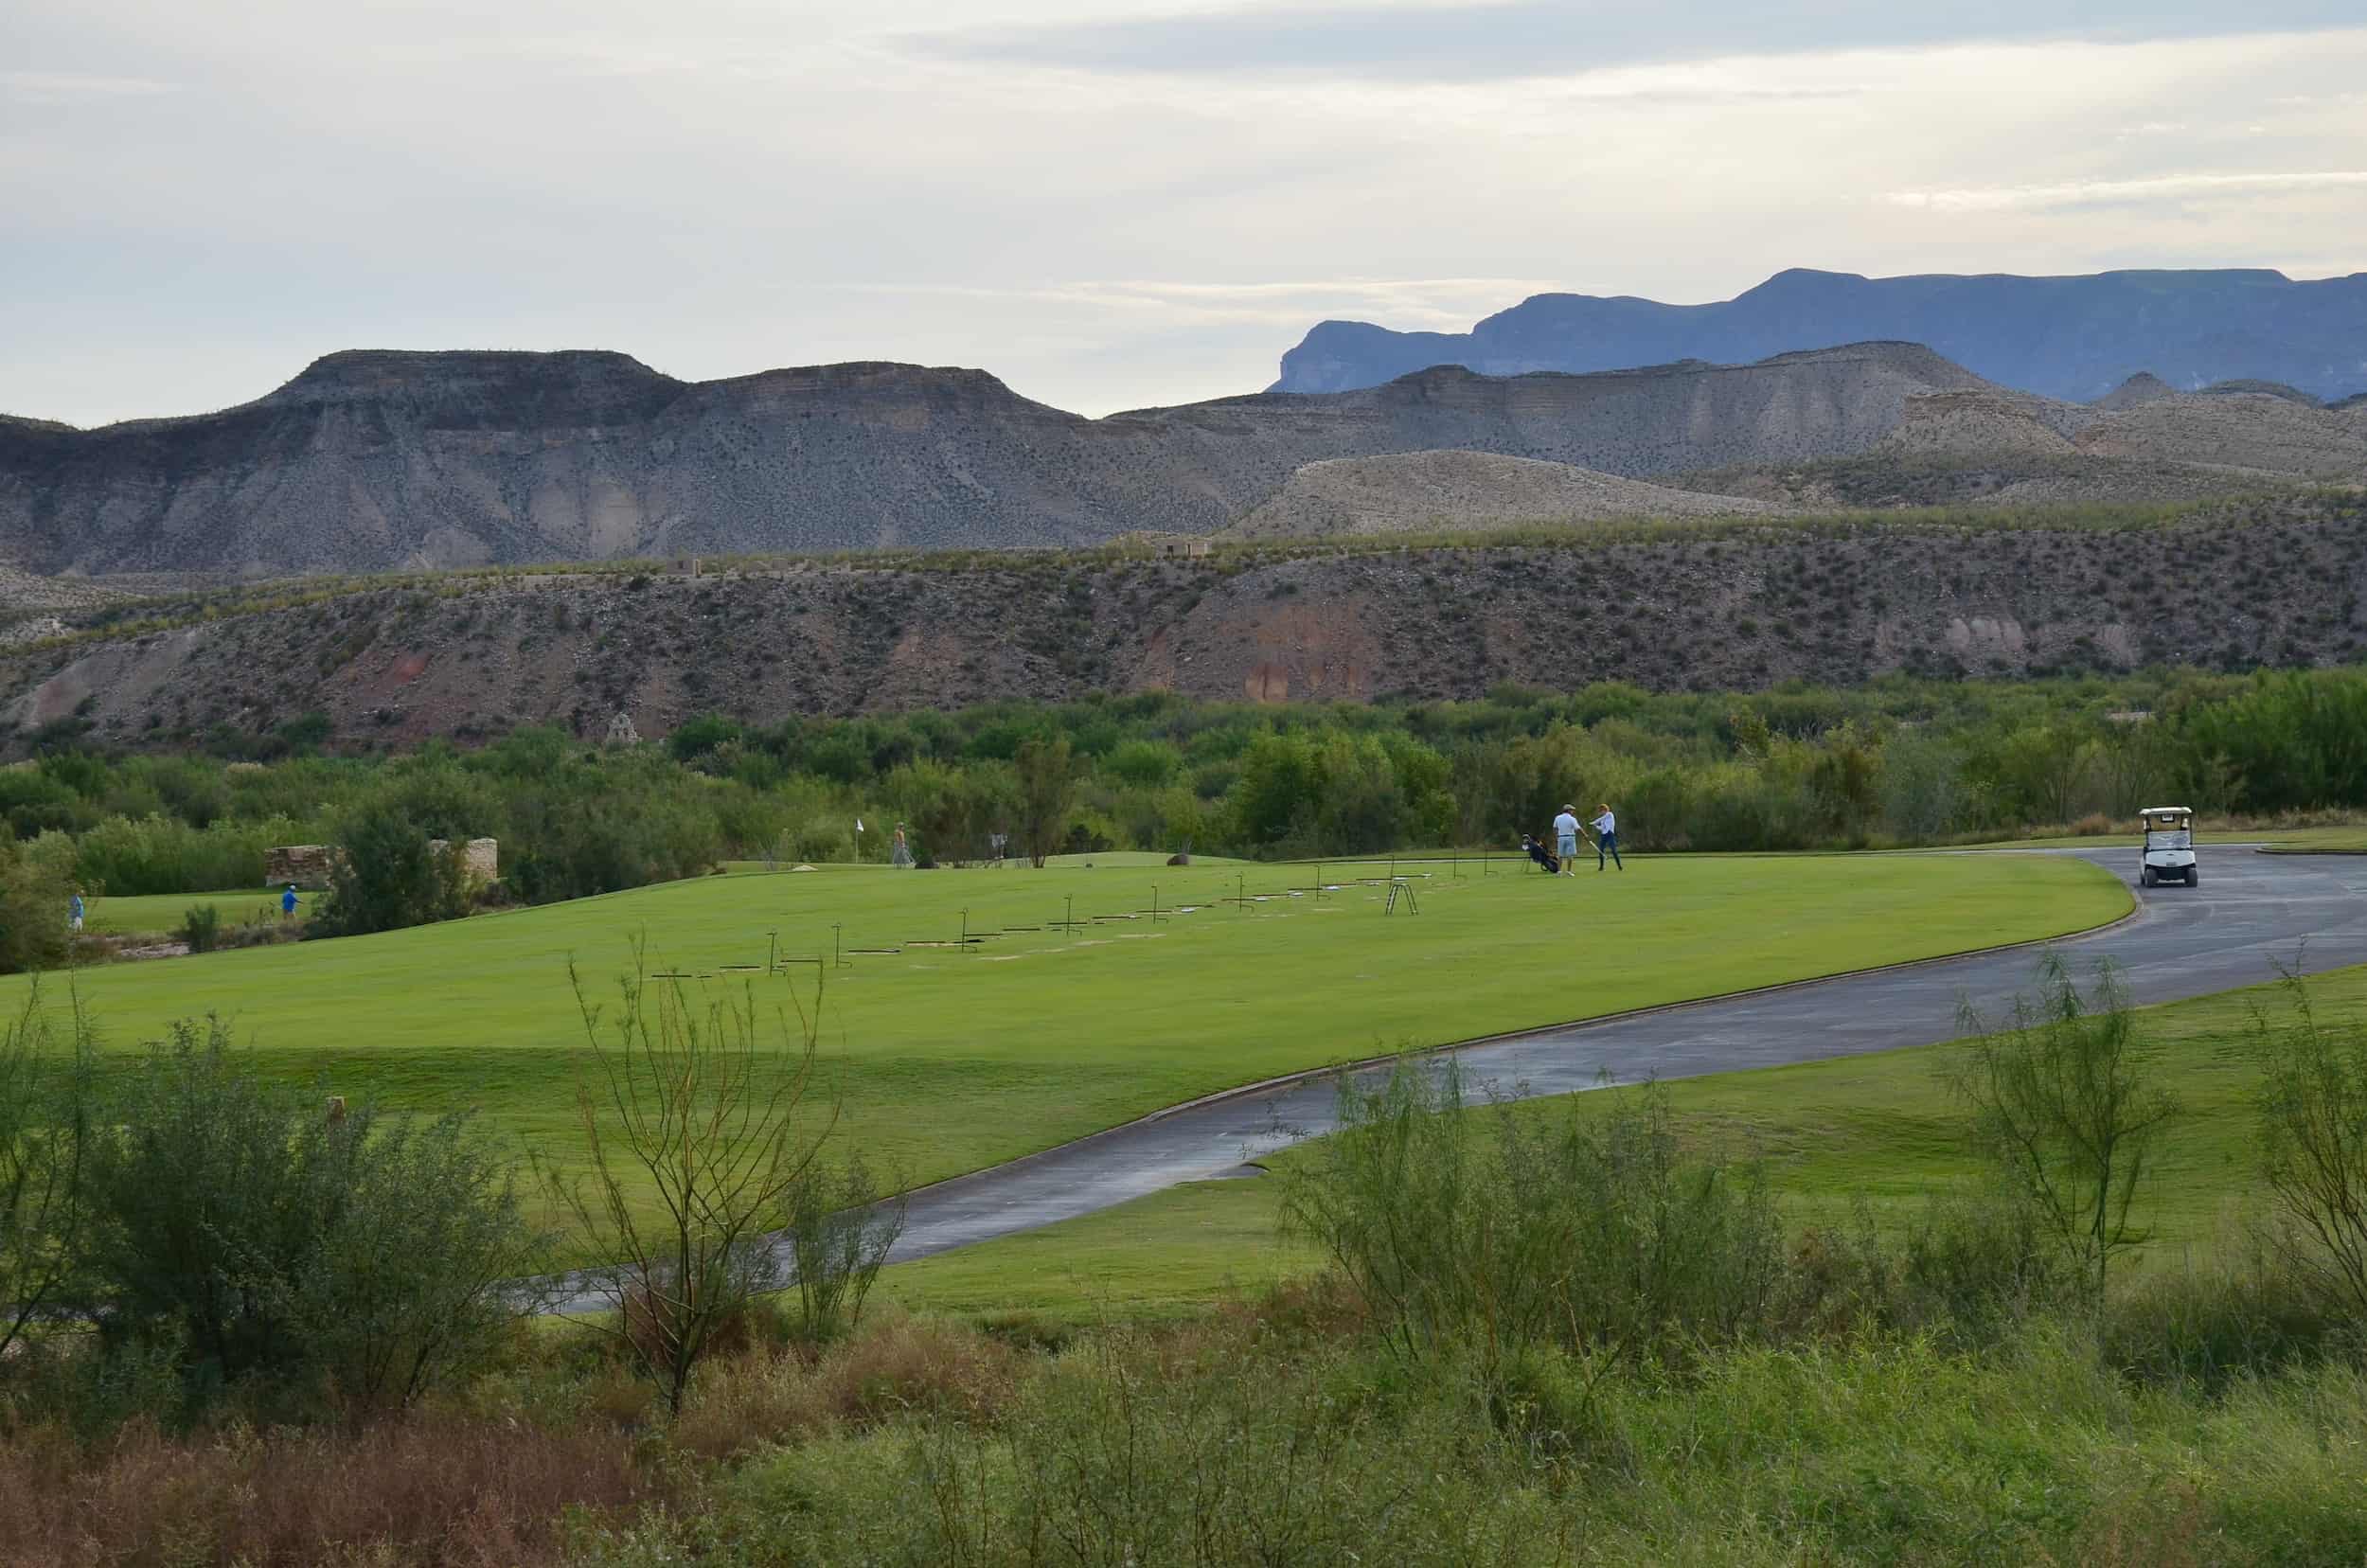 Golf course in Lajitas, Texas